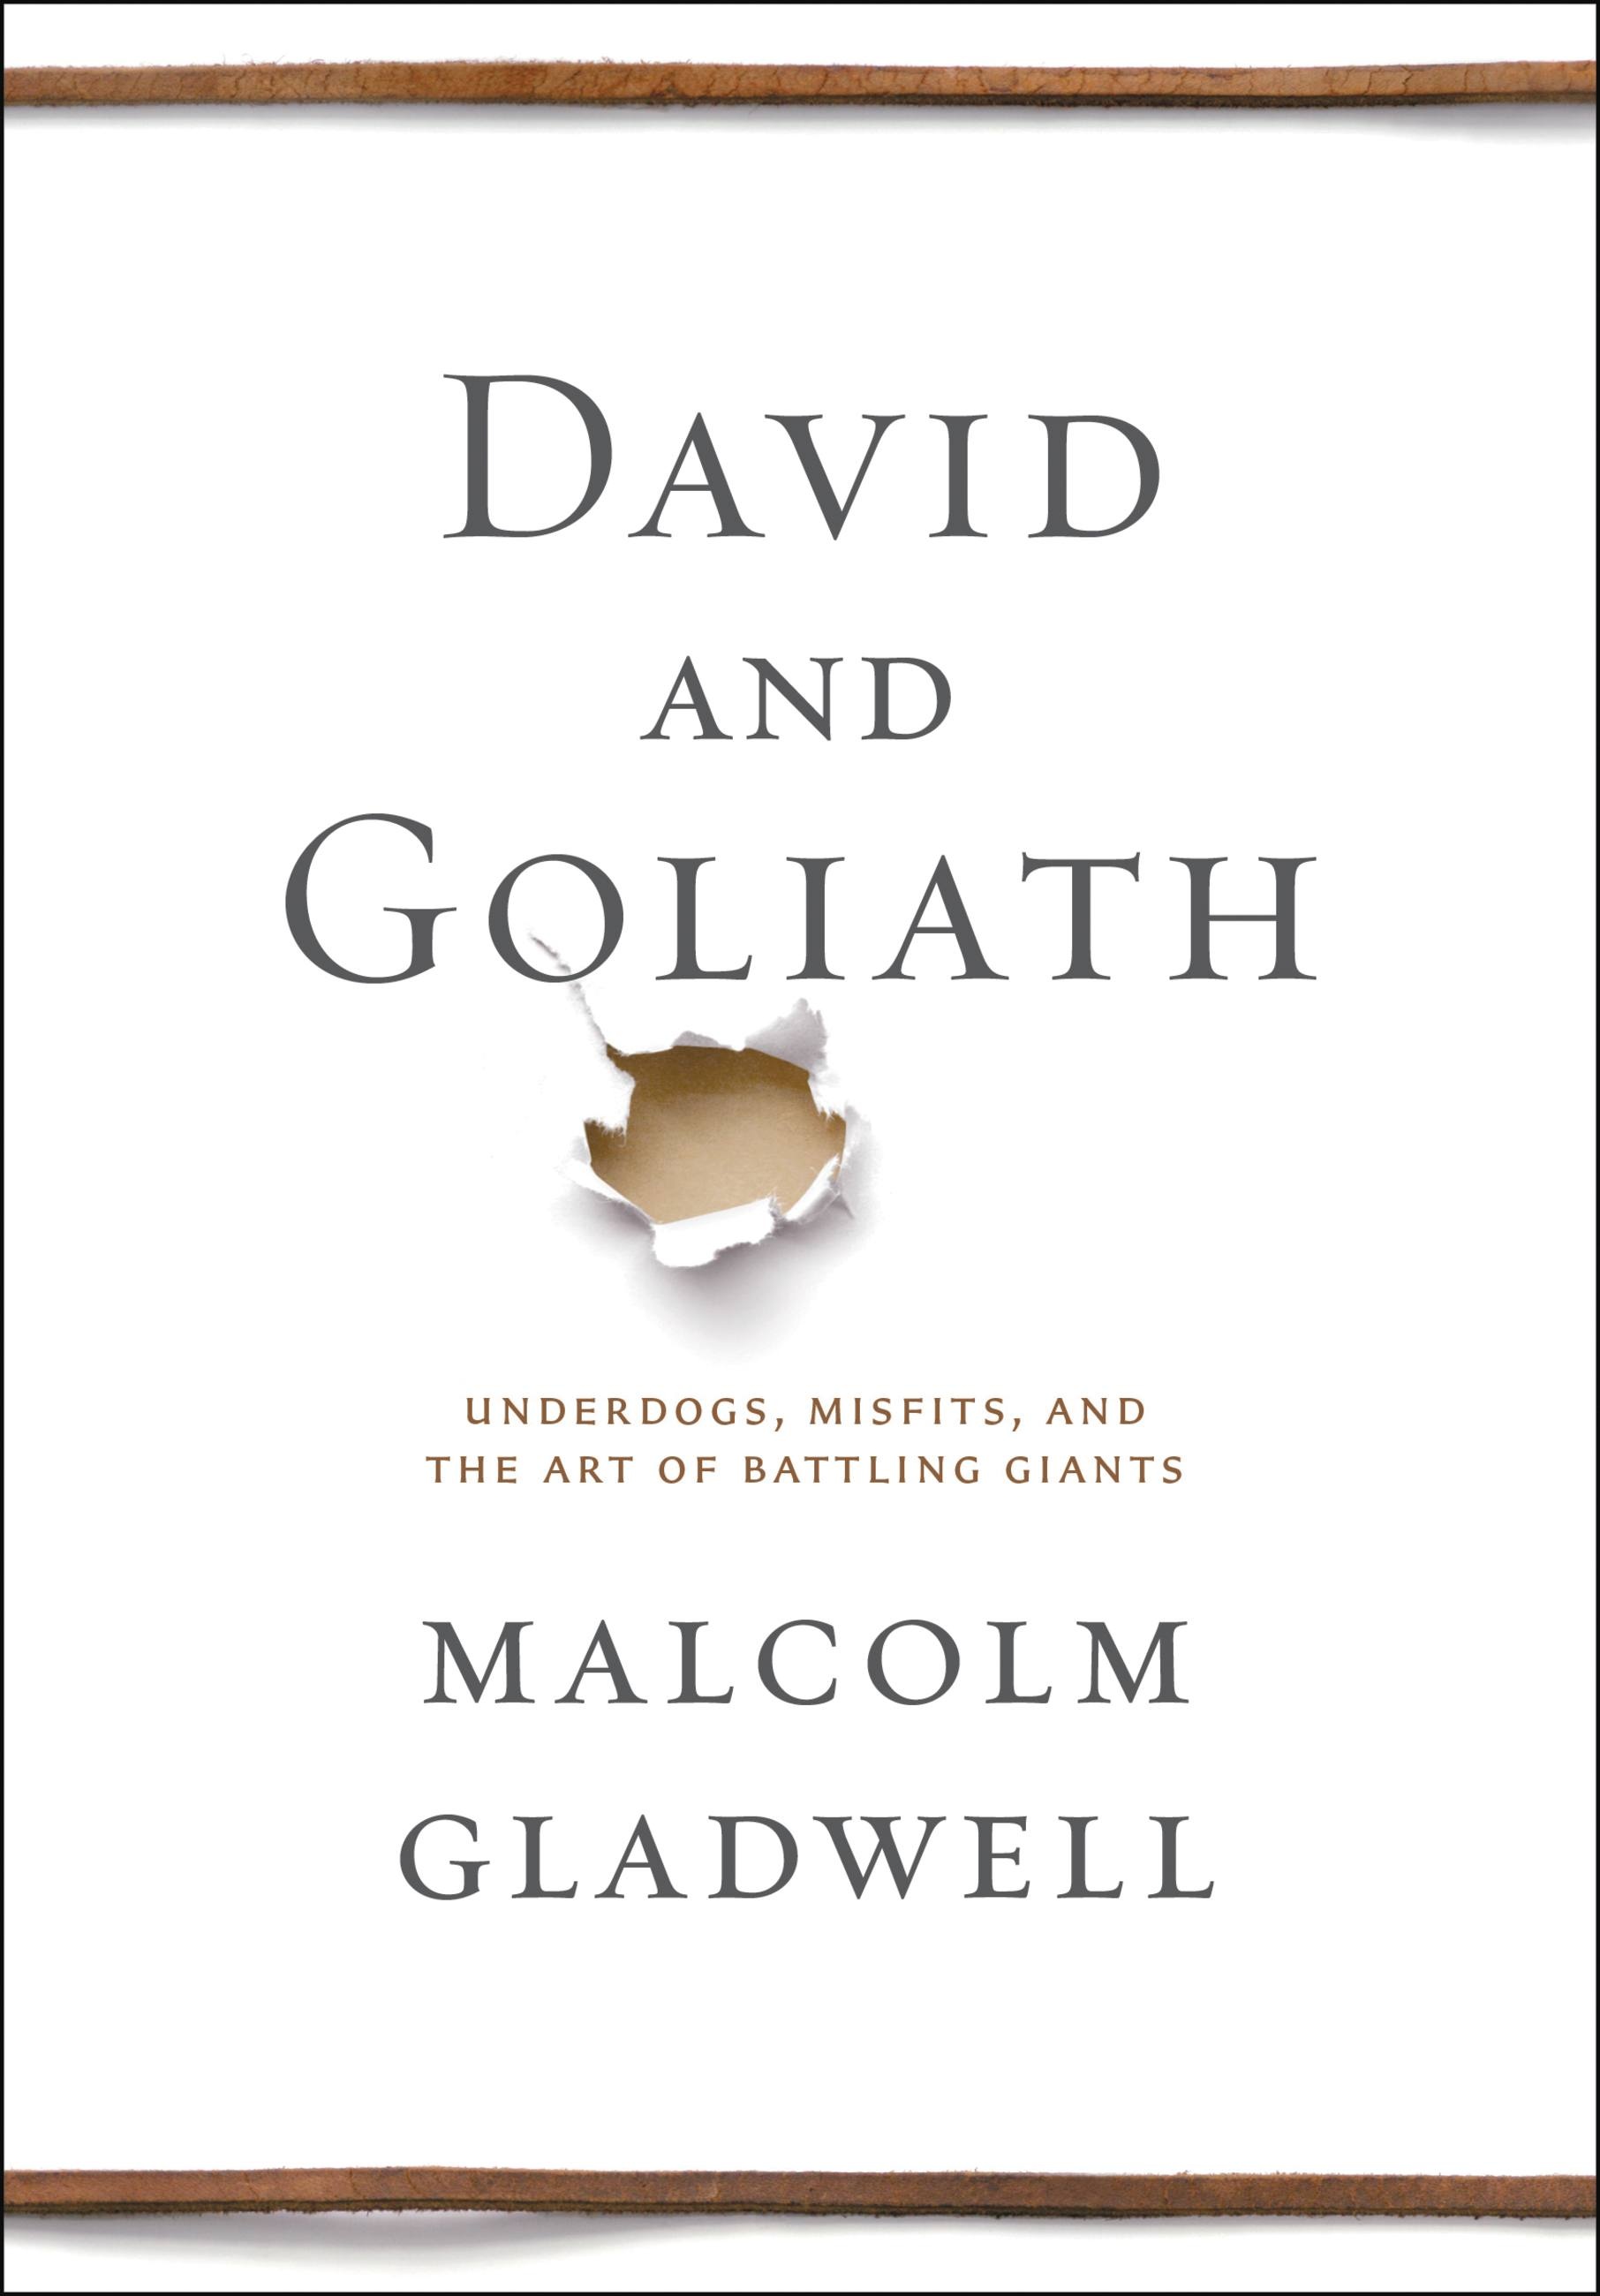 Malcolm gladwell essays